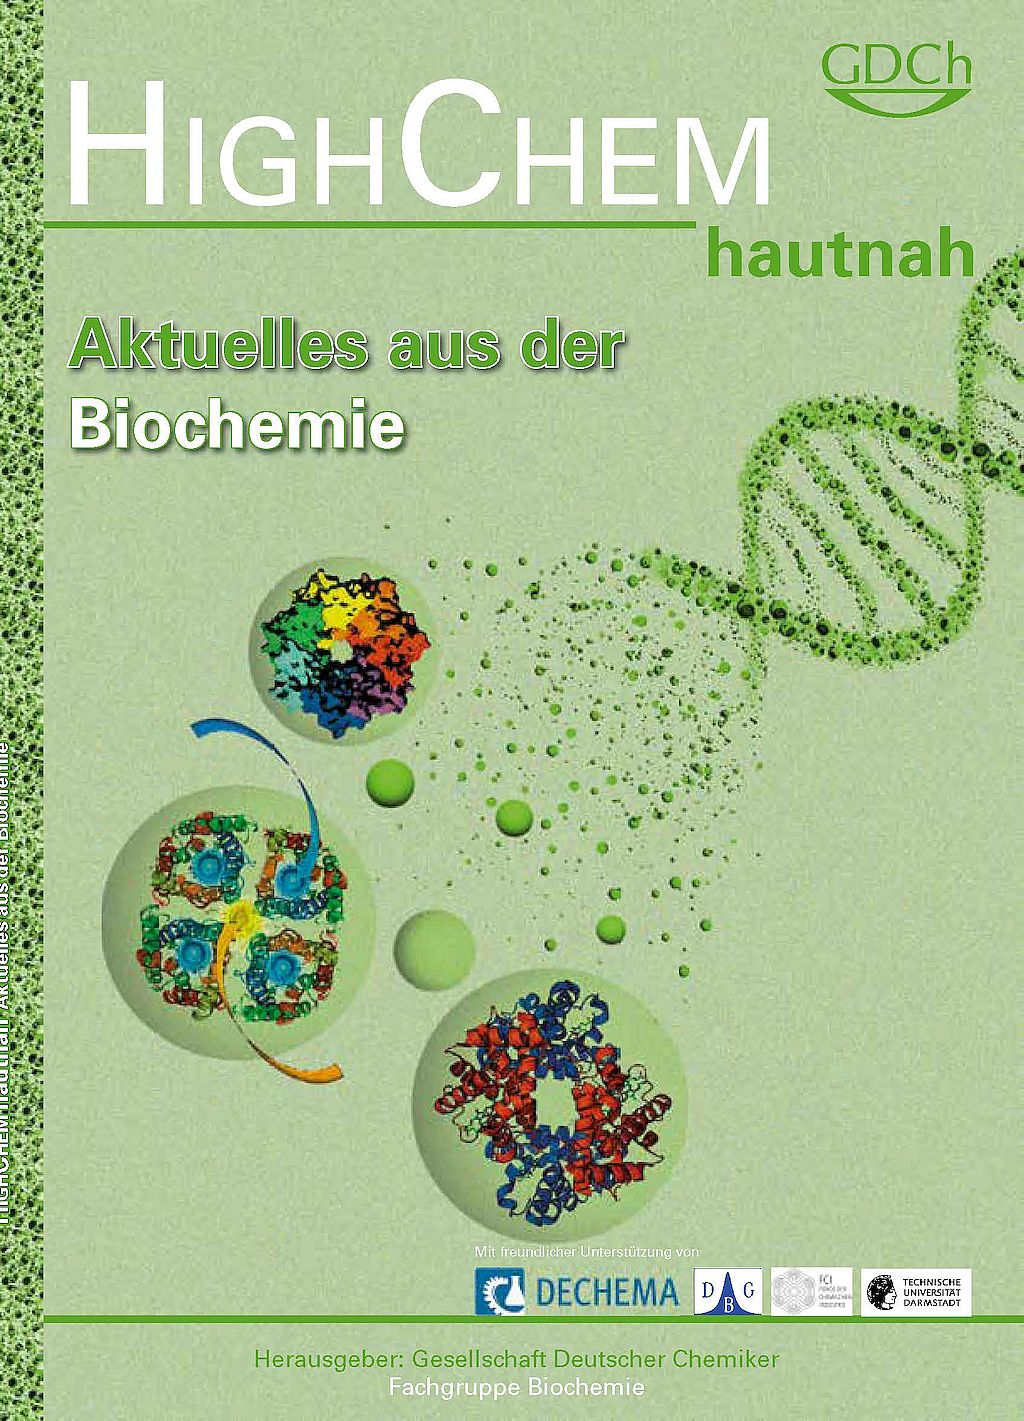 HighChem – Aktuelles aus der Biochemie